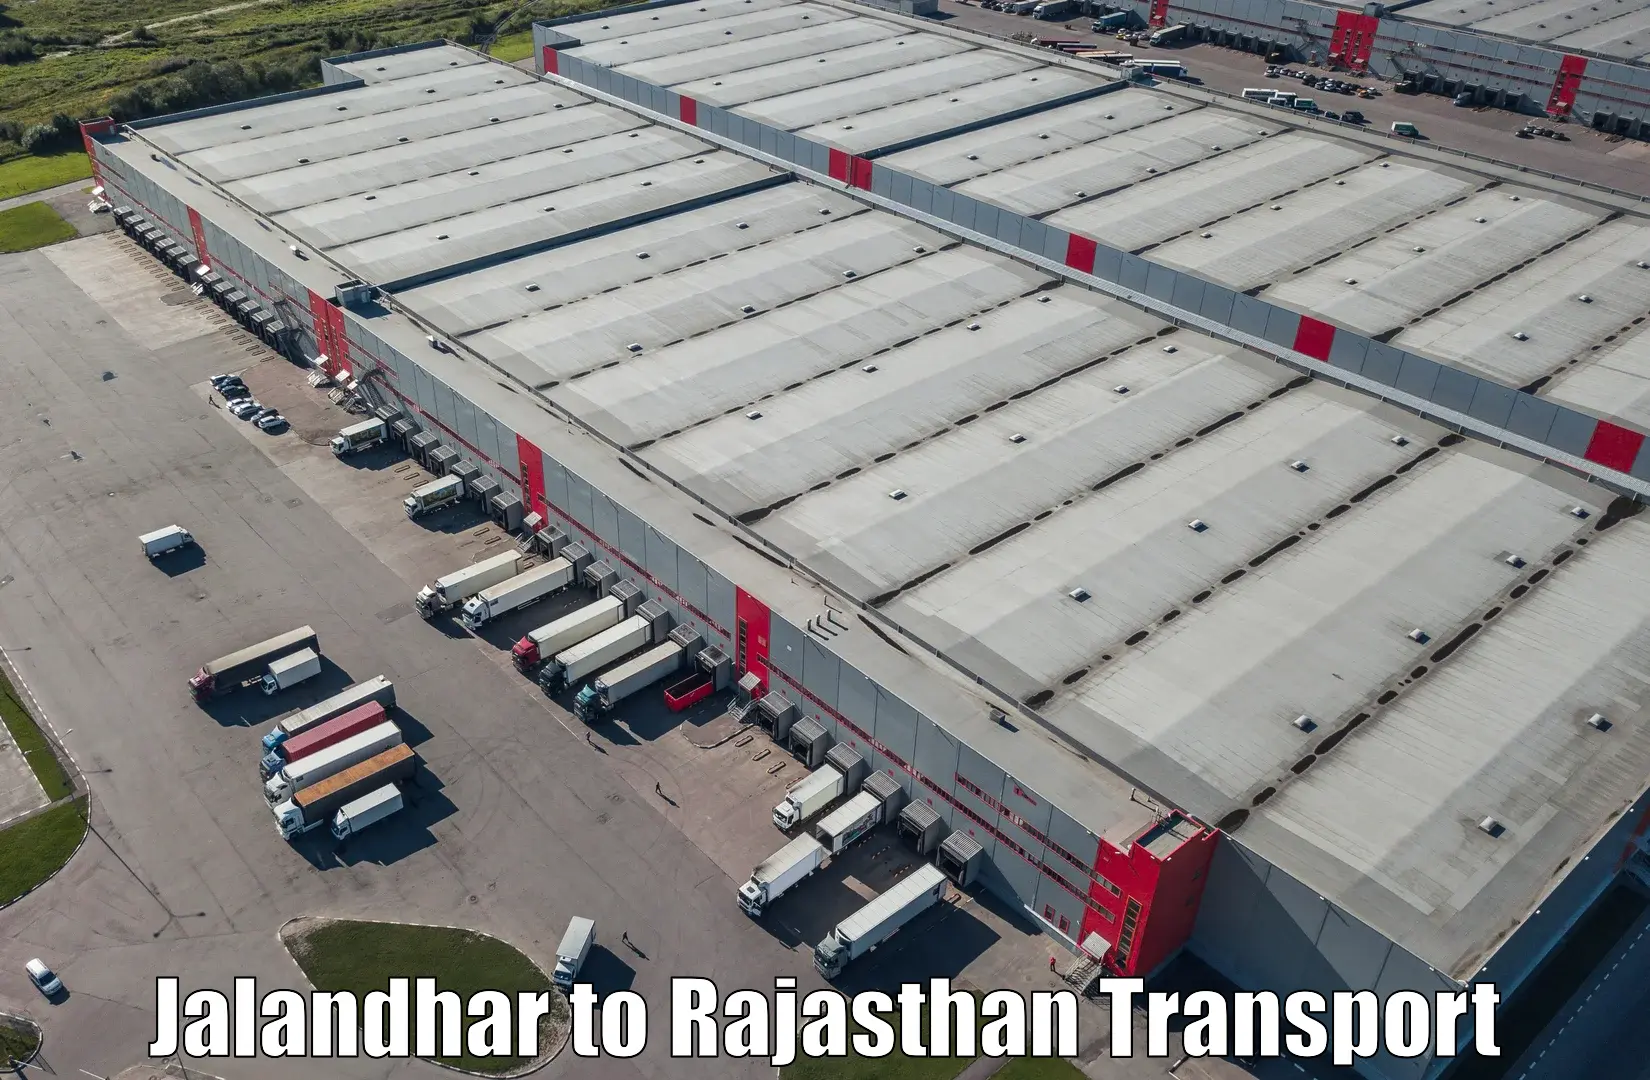 Truck transport companies in India Jalandhar to IIIT Kota